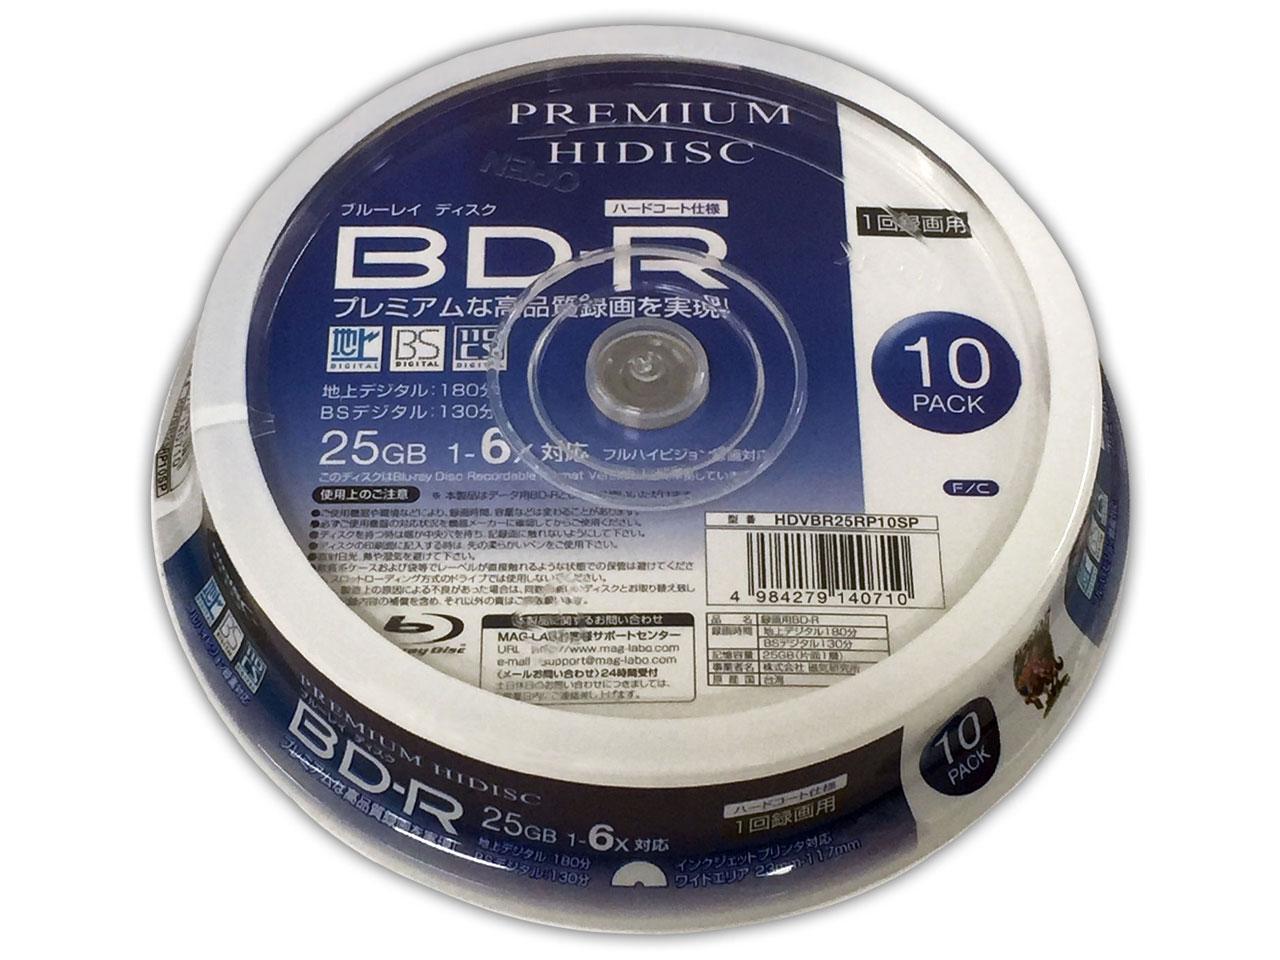 HI DISC HDVBR25RP10SP 1^pBD-R 25GB 6{ XshP[X10g